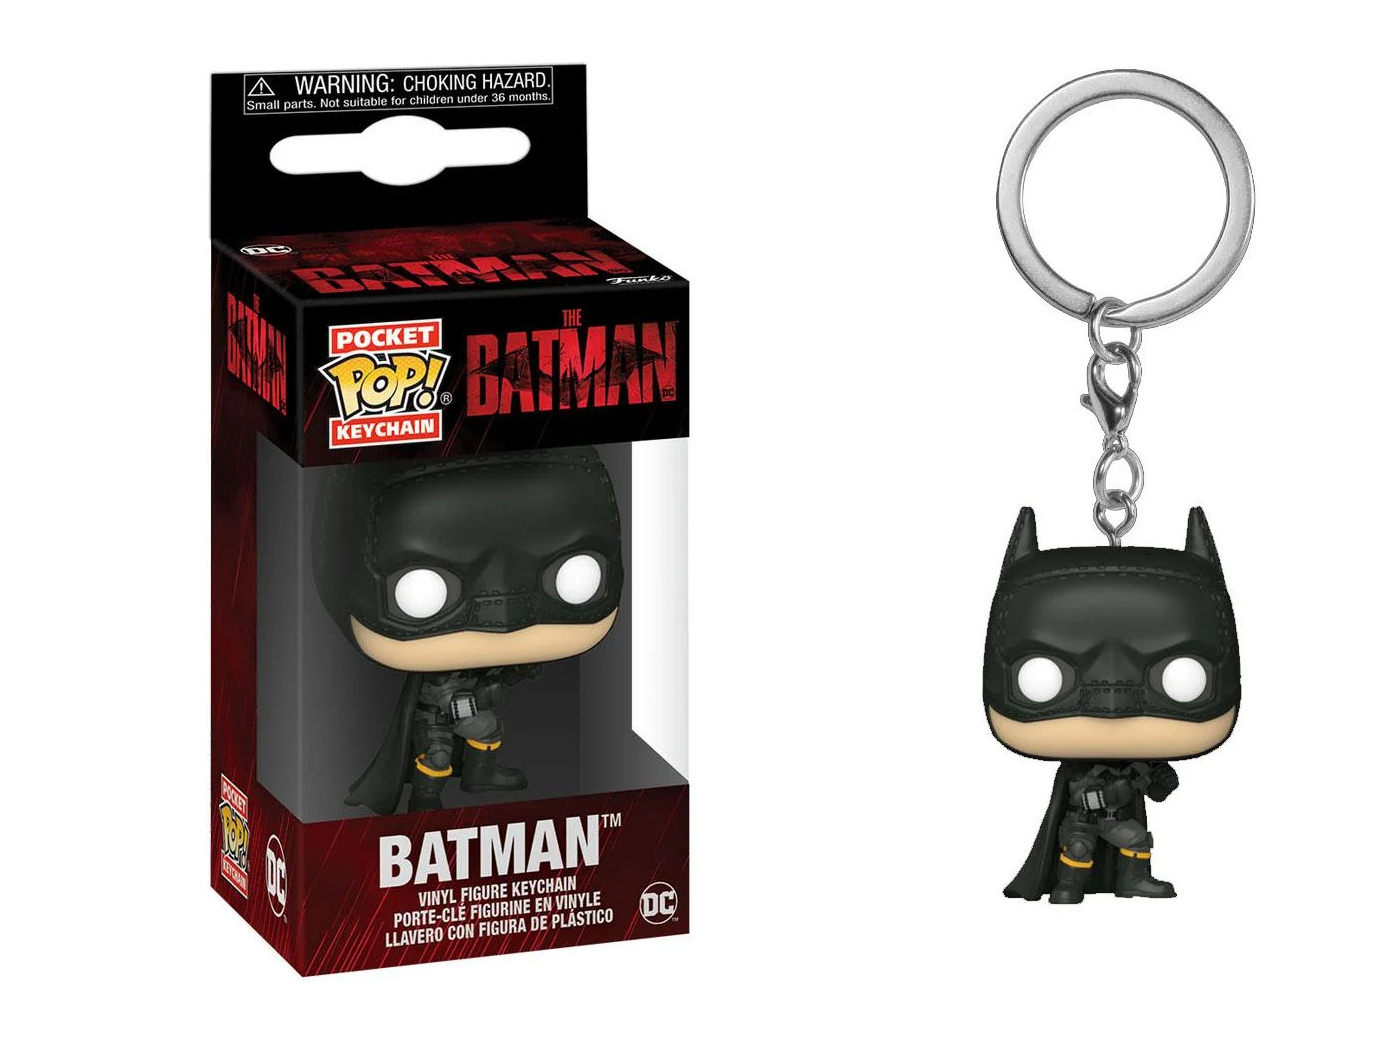 Batman Funko Pop! Keychain | DC COMICS - Pocket Pop Keychains - Batman 2022 Robert Pattinson Funko